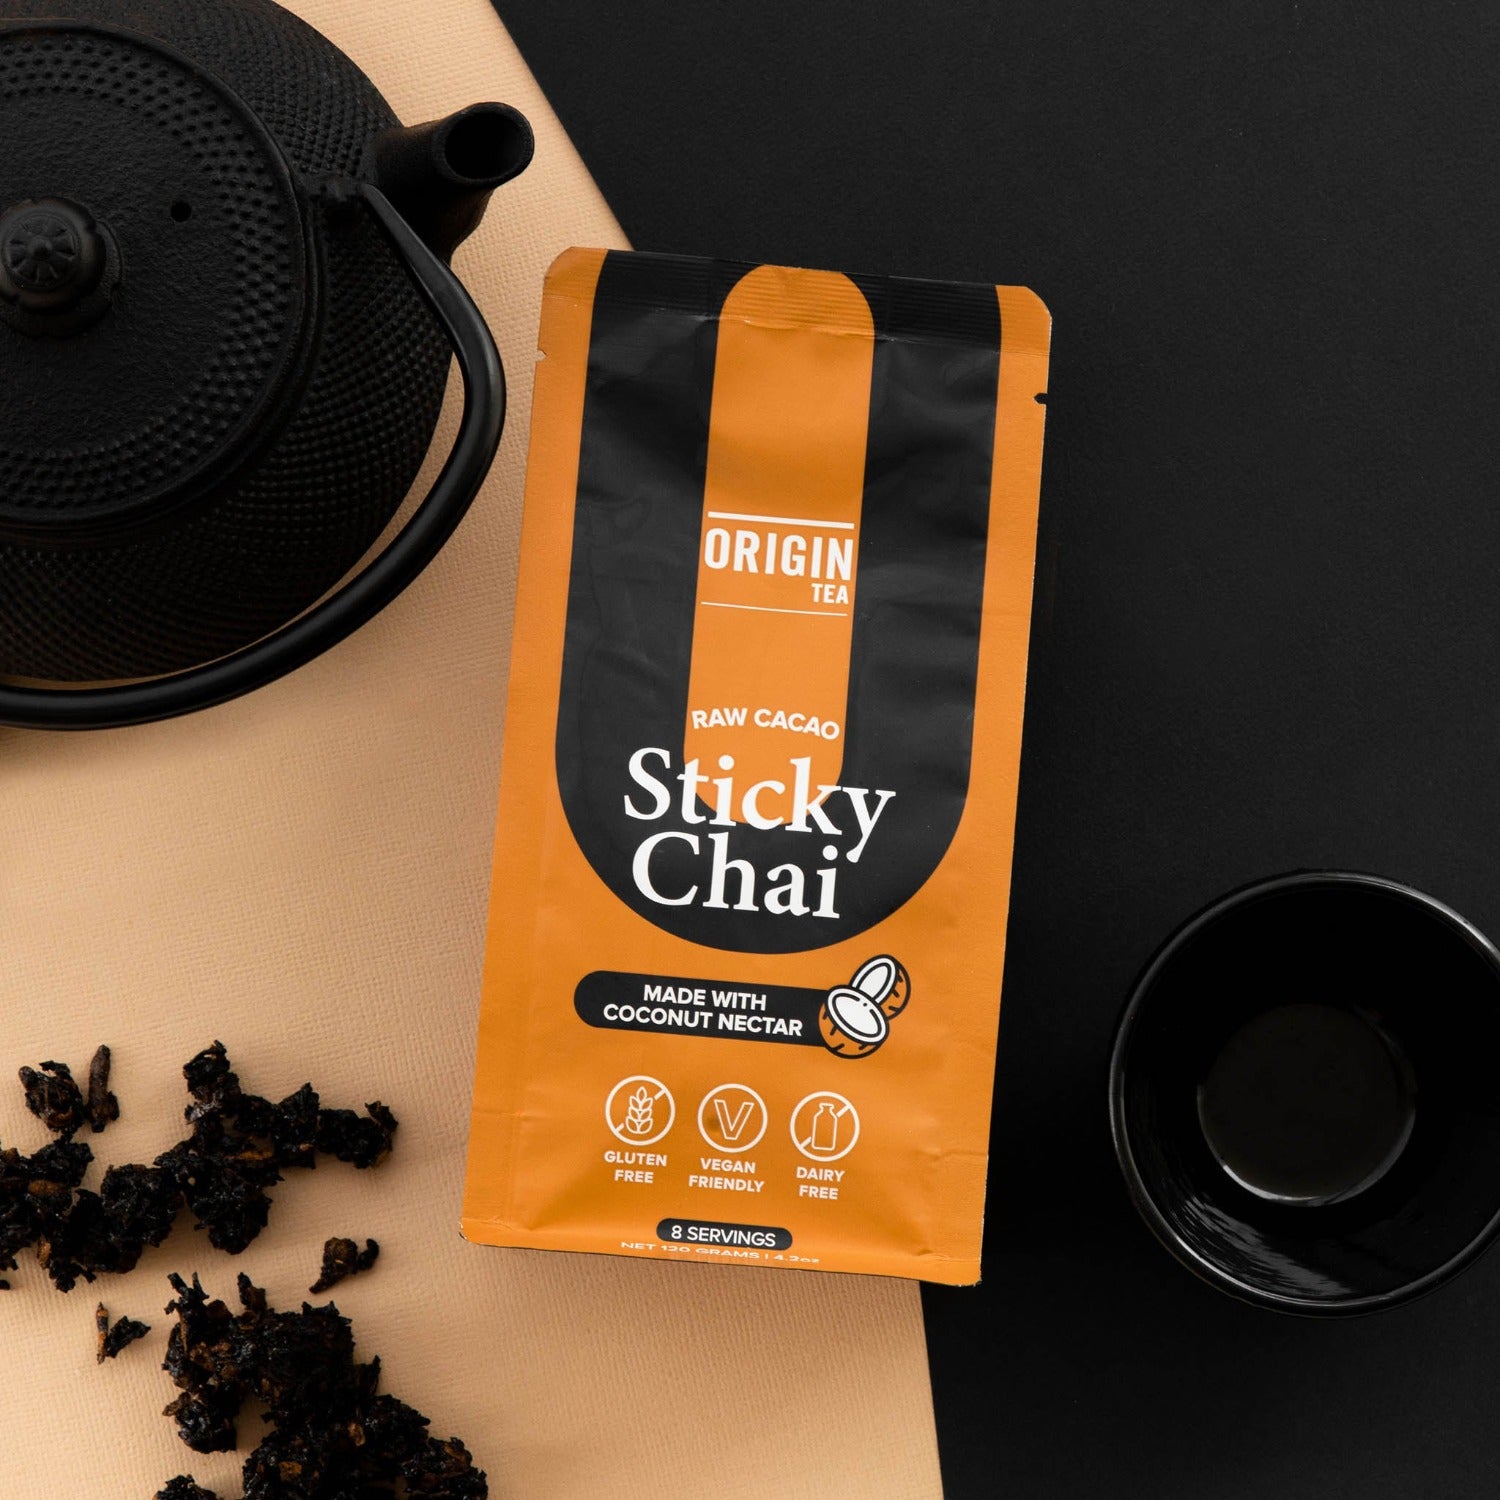 Raw Cacao Sticky Chai - Origin Tea